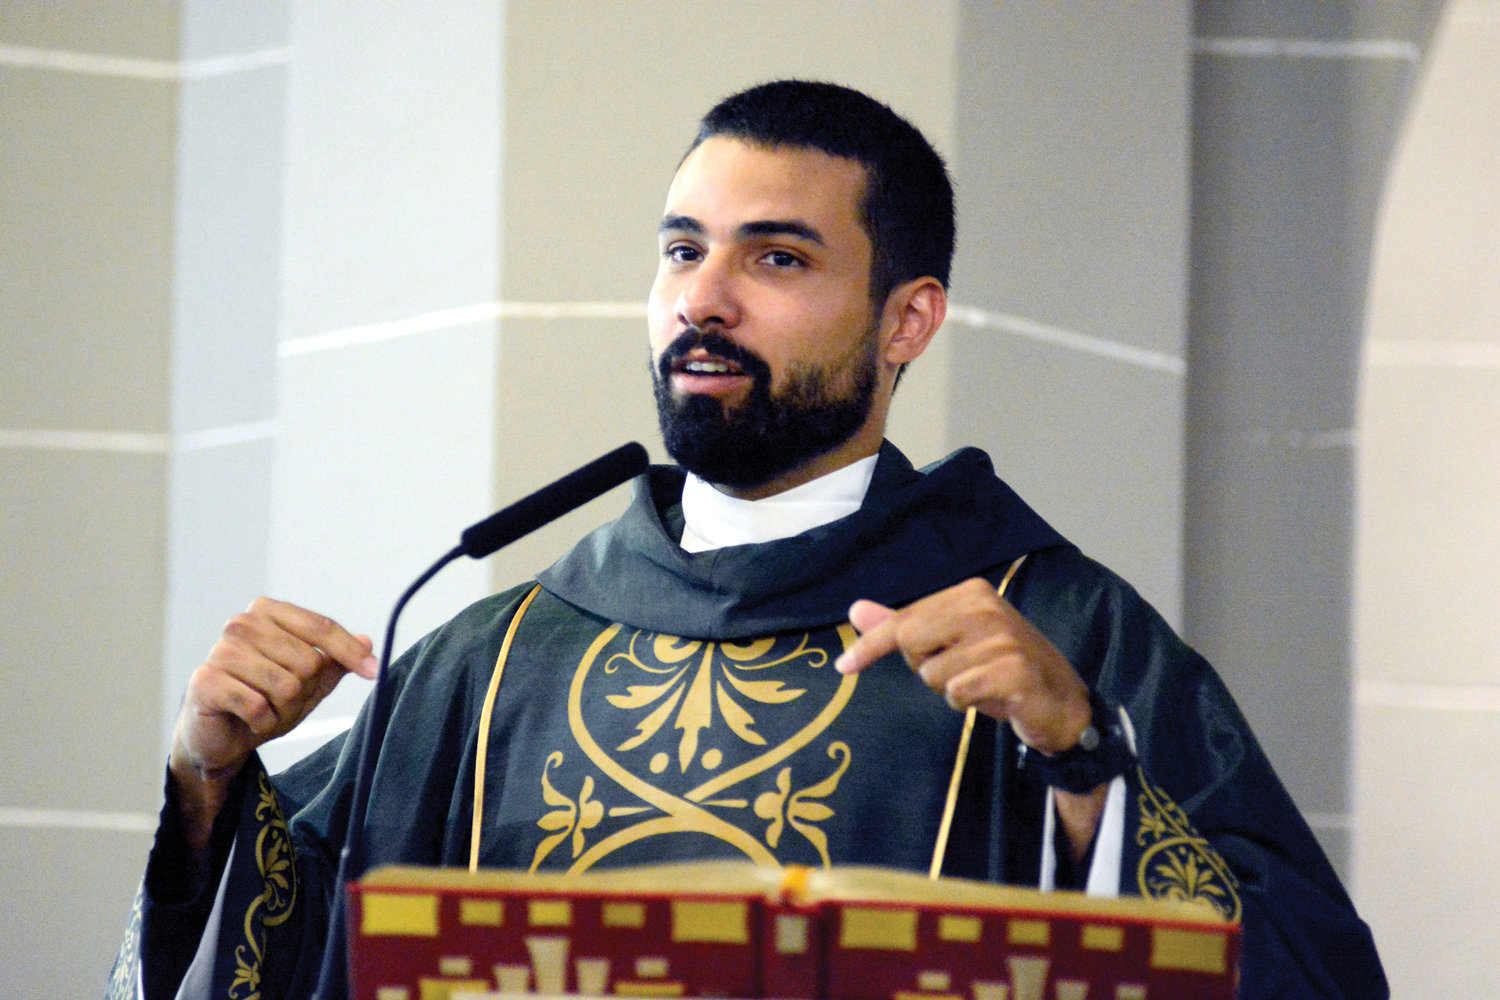 El padre Rodríguez, quien ahora es el nuevo párroco de la Anunciación, habla durante la misma misa.